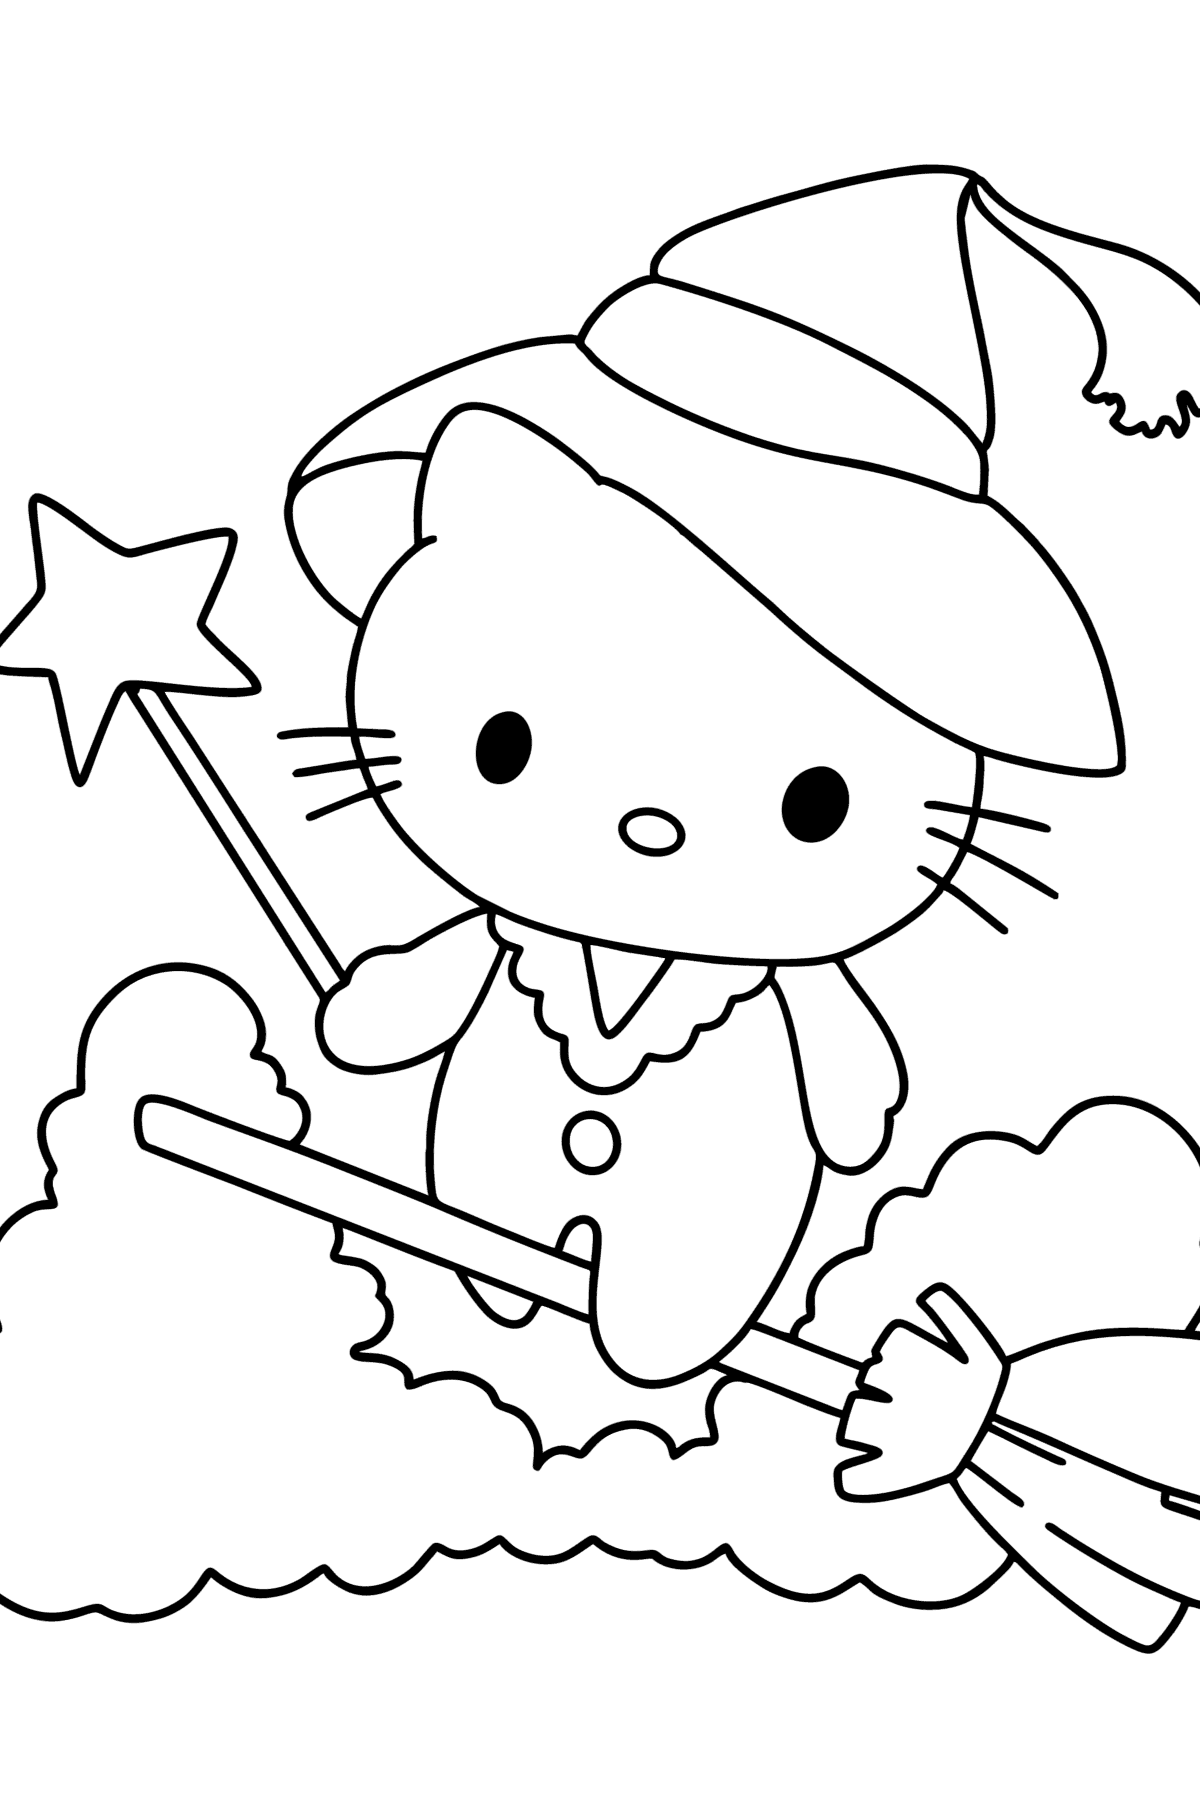 Ausmalbild Hello Kitty Halloween - Malvorlagen für Kinder